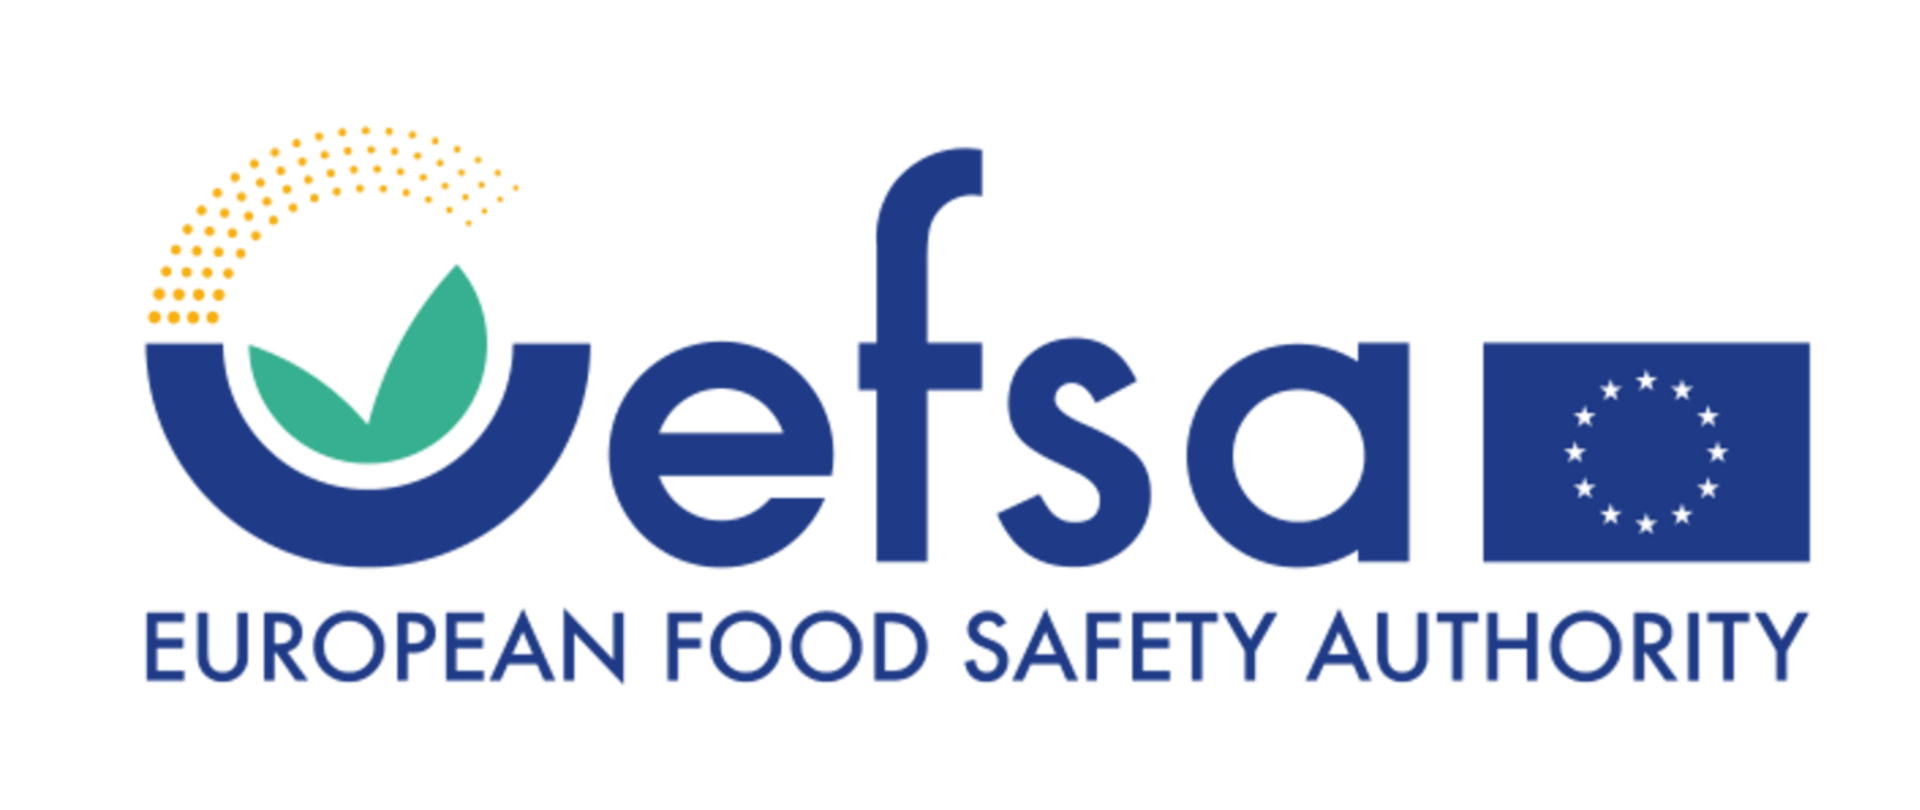 Logo kampanii EFSA "Wybieraj bezpieczną żywność" - "EUROPEAN FOOD SAFETY AUTHORITY"